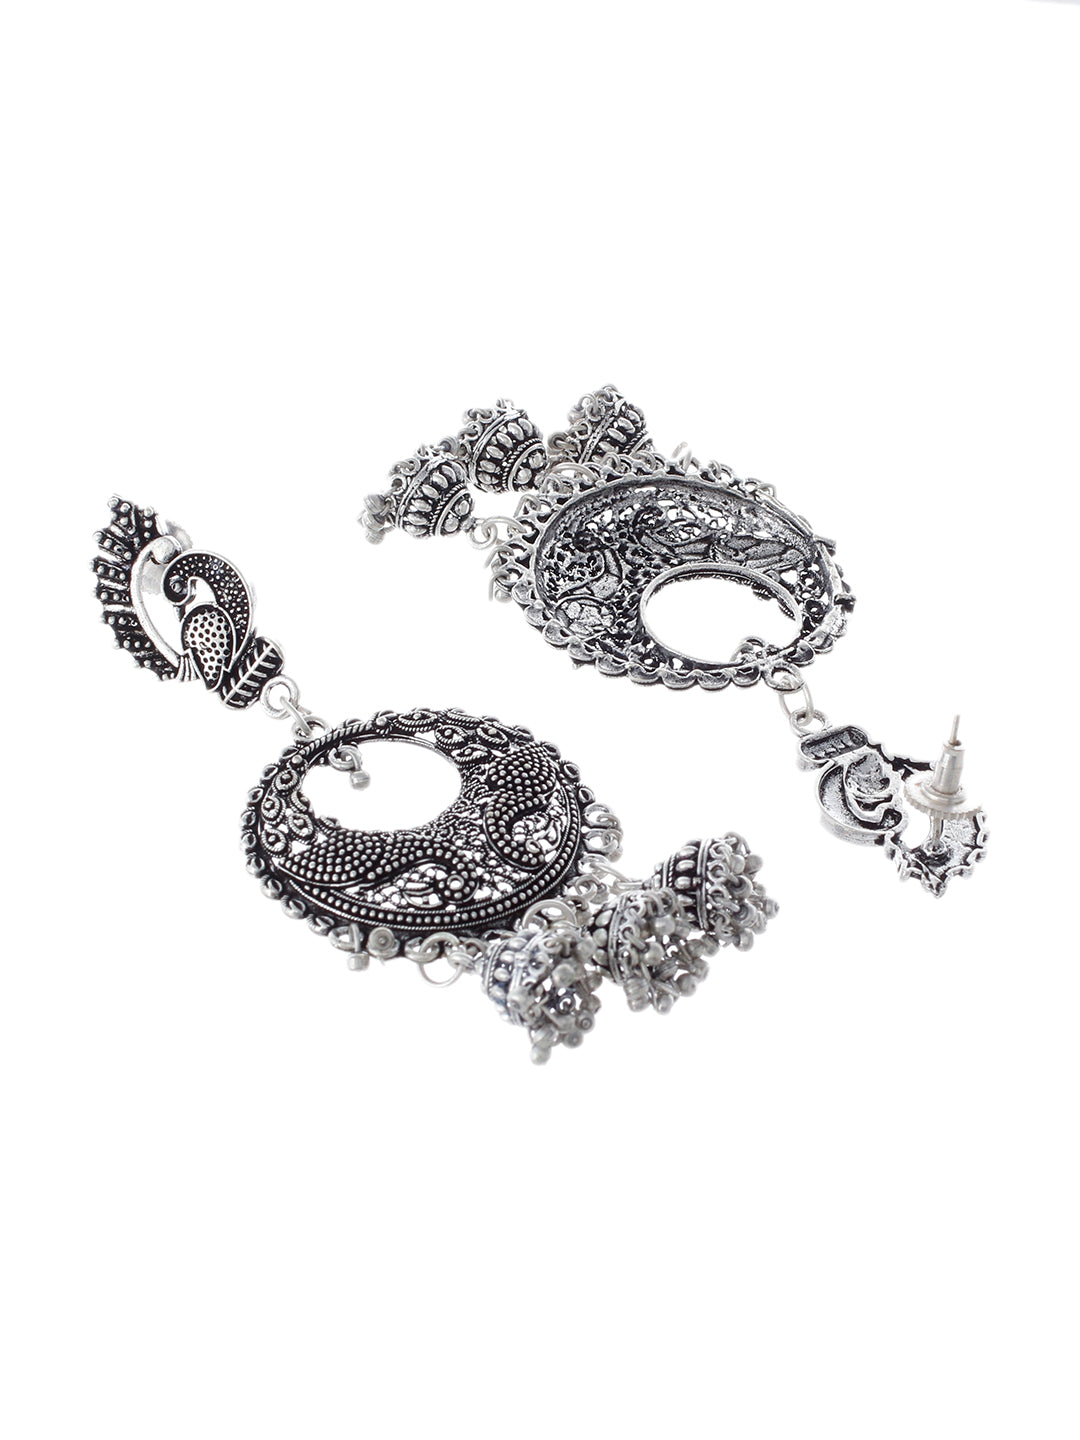 Oxidised silver jhumki dangler earring